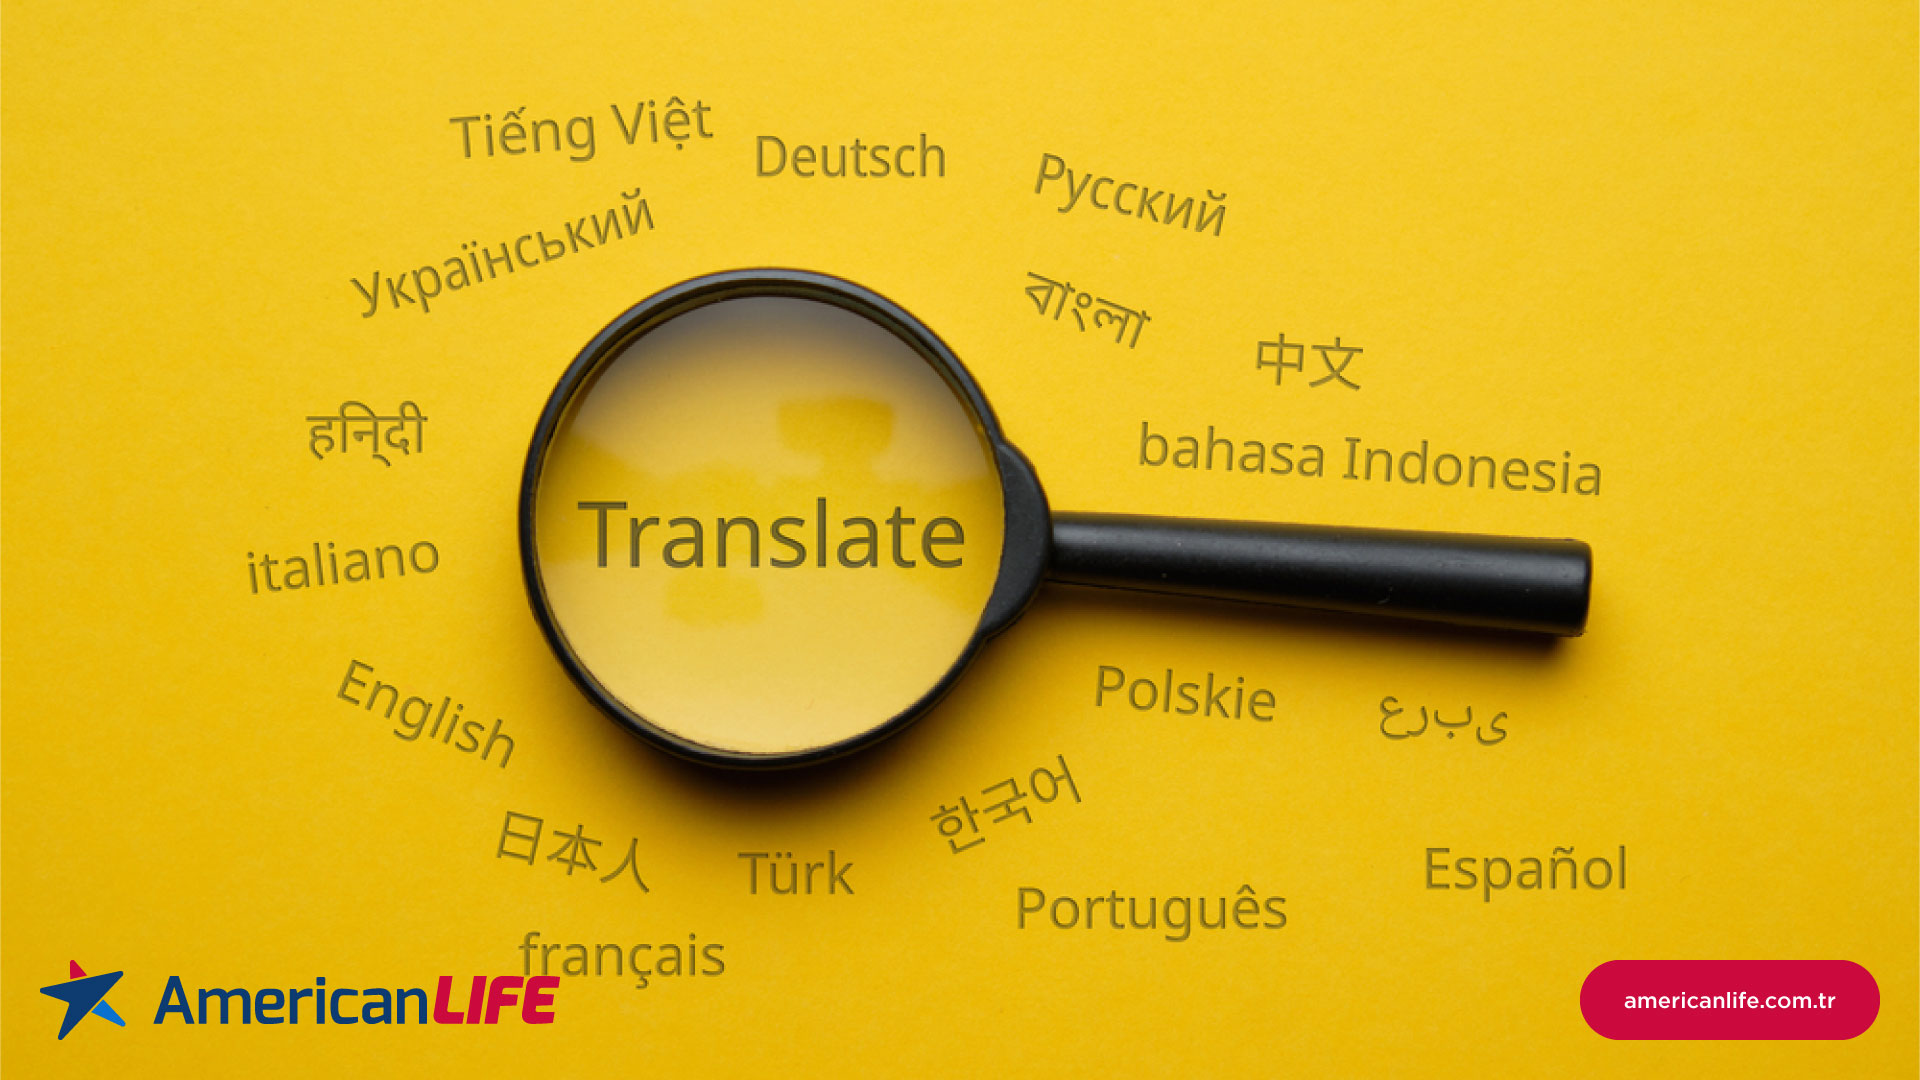 İngilizce Çeviri ile İngilizce Kursu Arasındaki Fark Nedir? Hangisi Daha İyidir?